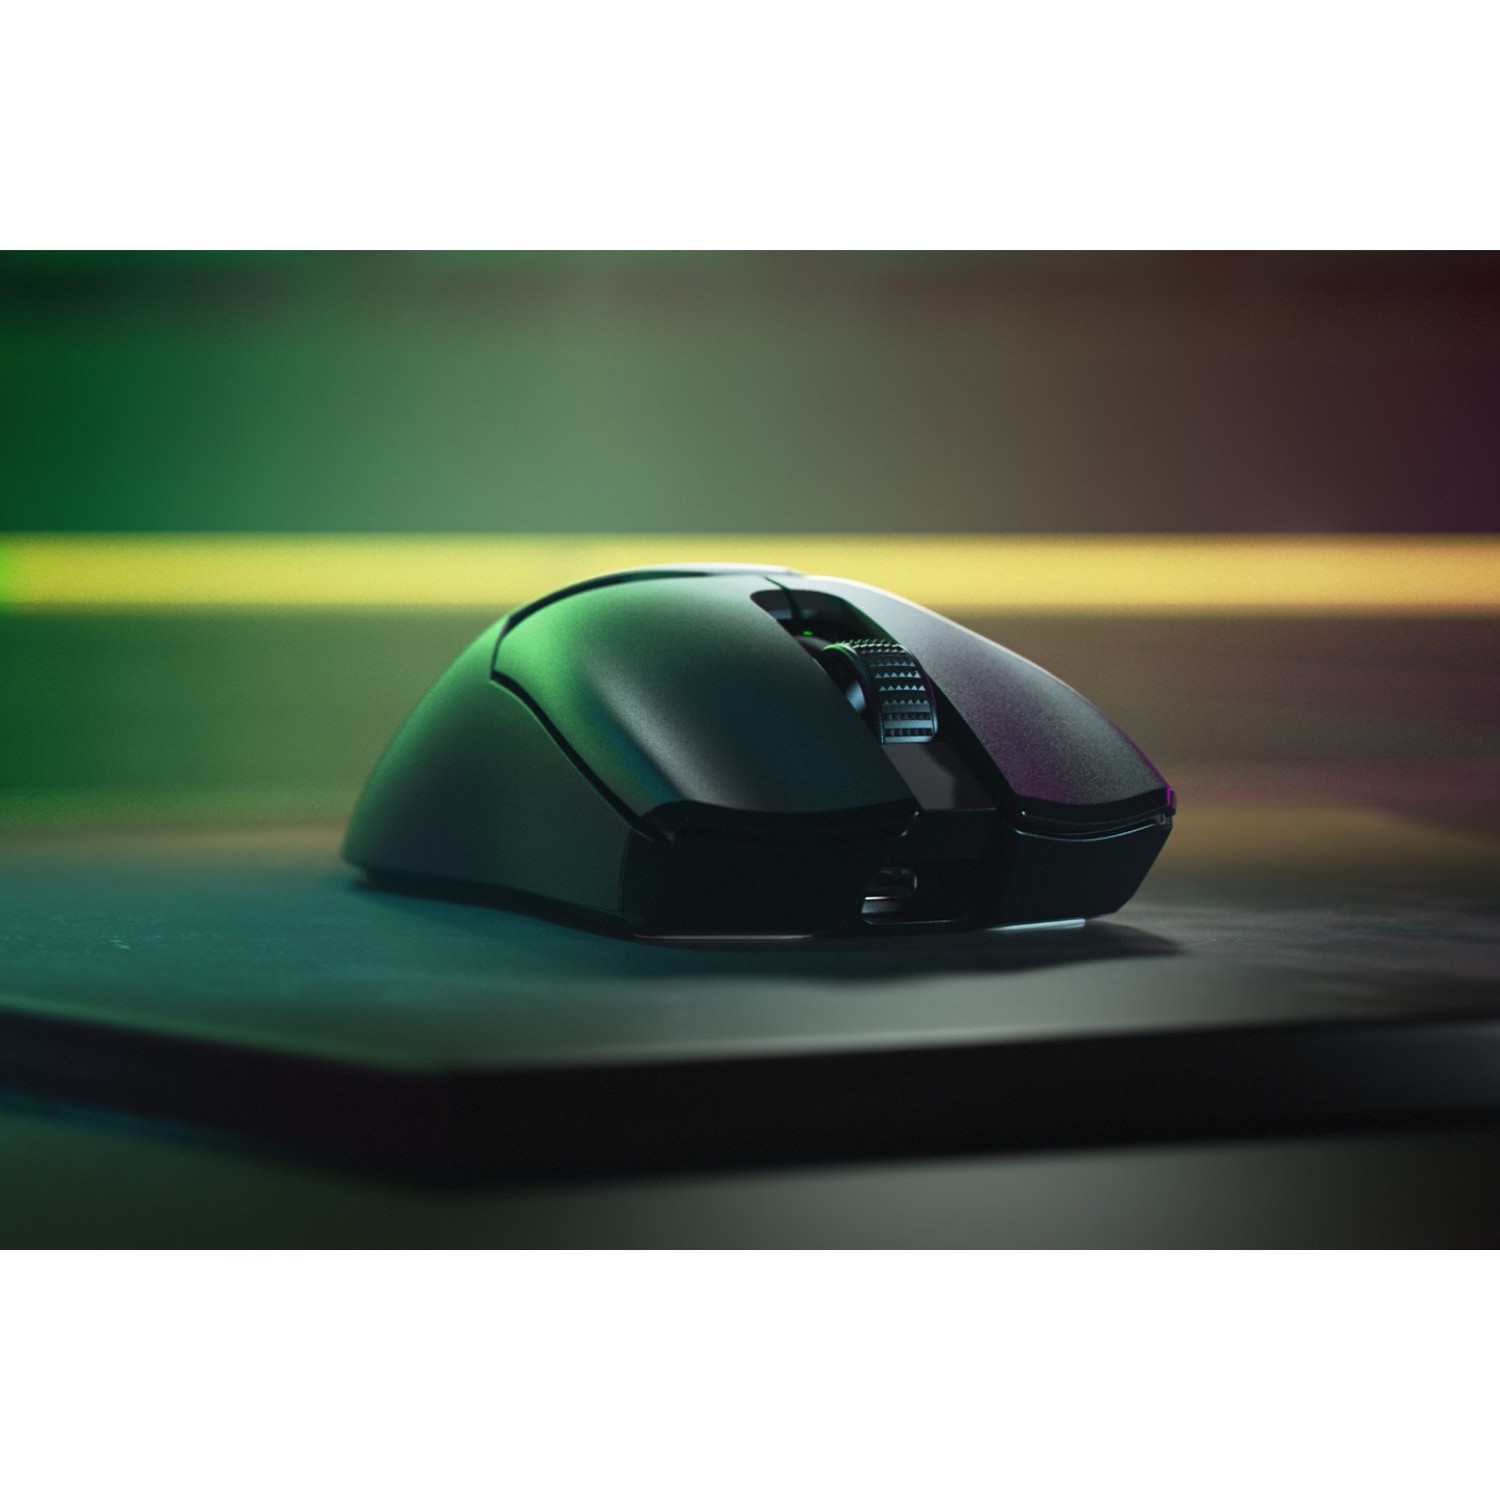 Razer Viper V2 Pro mouse - RZ01-04390100-R3G1